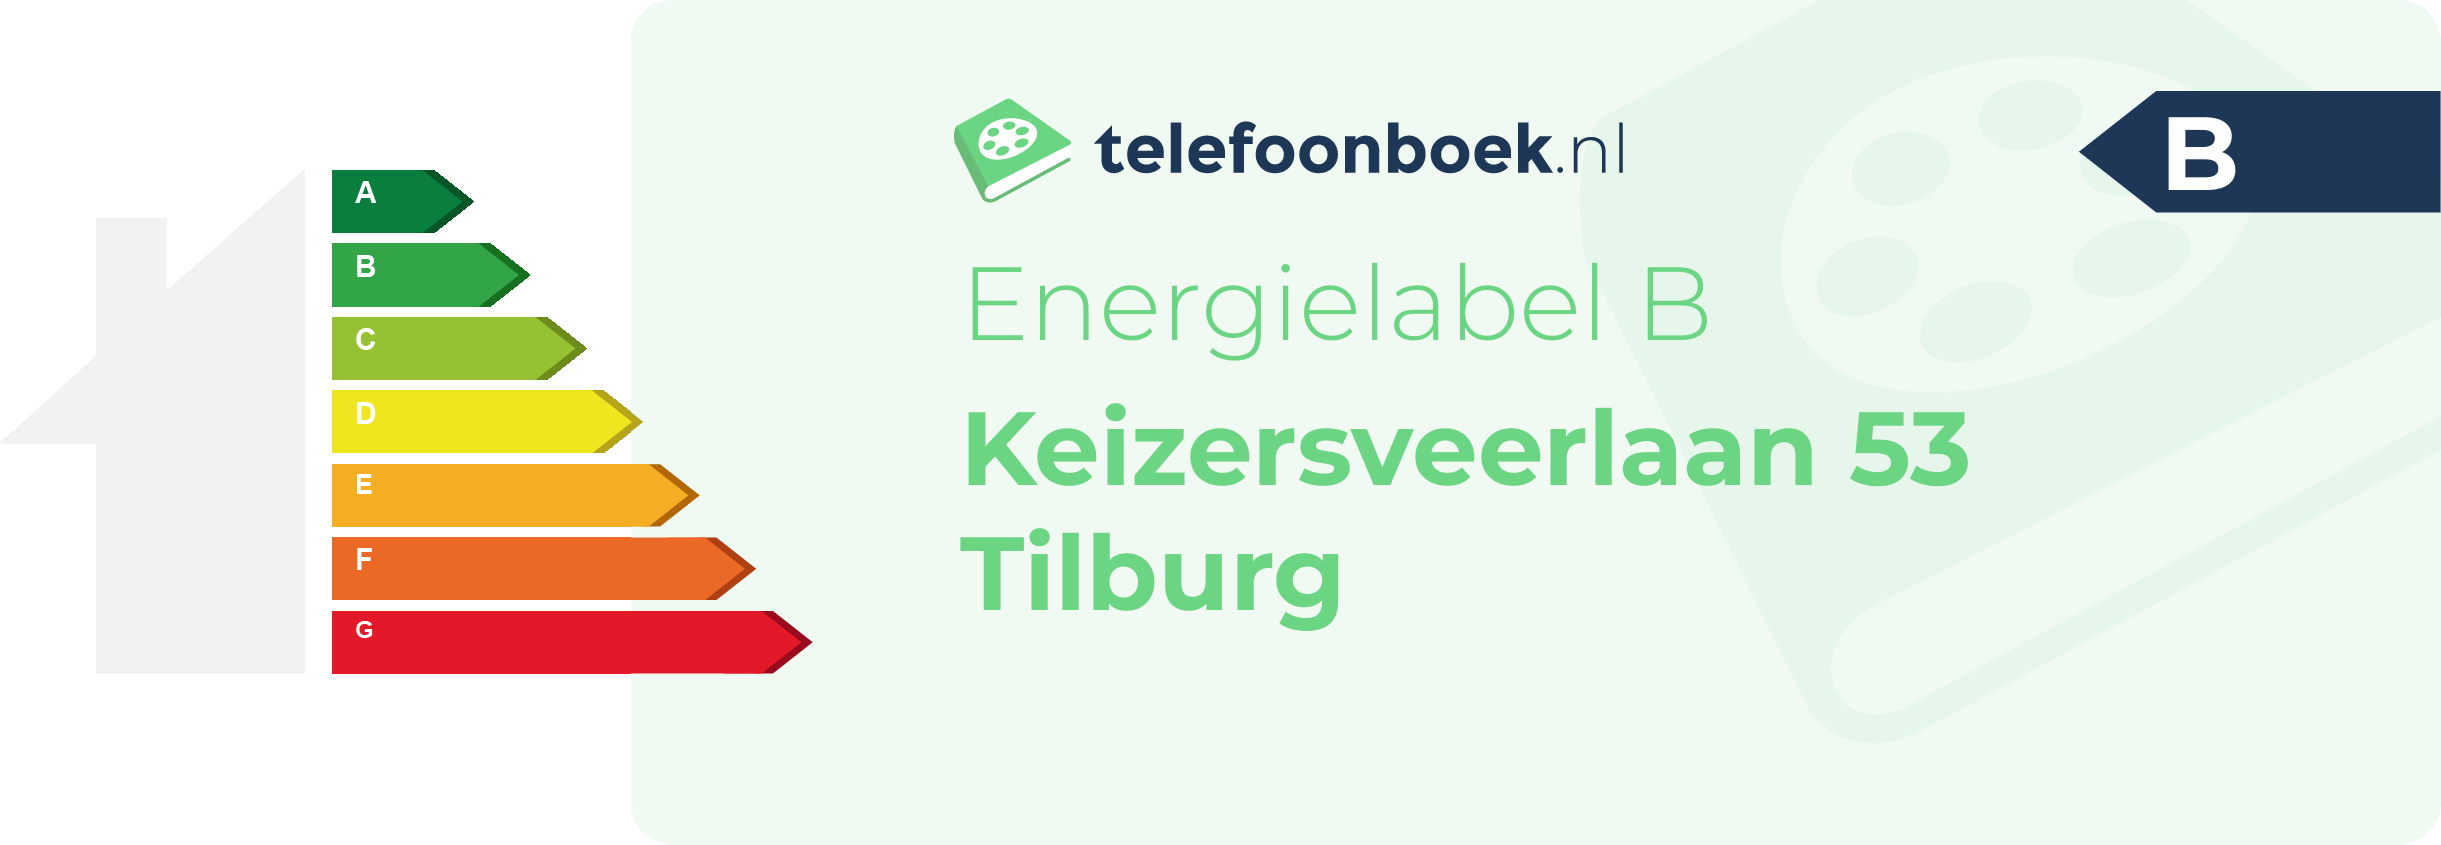 Energielabel Keizersveerlaan 53 Tilburg